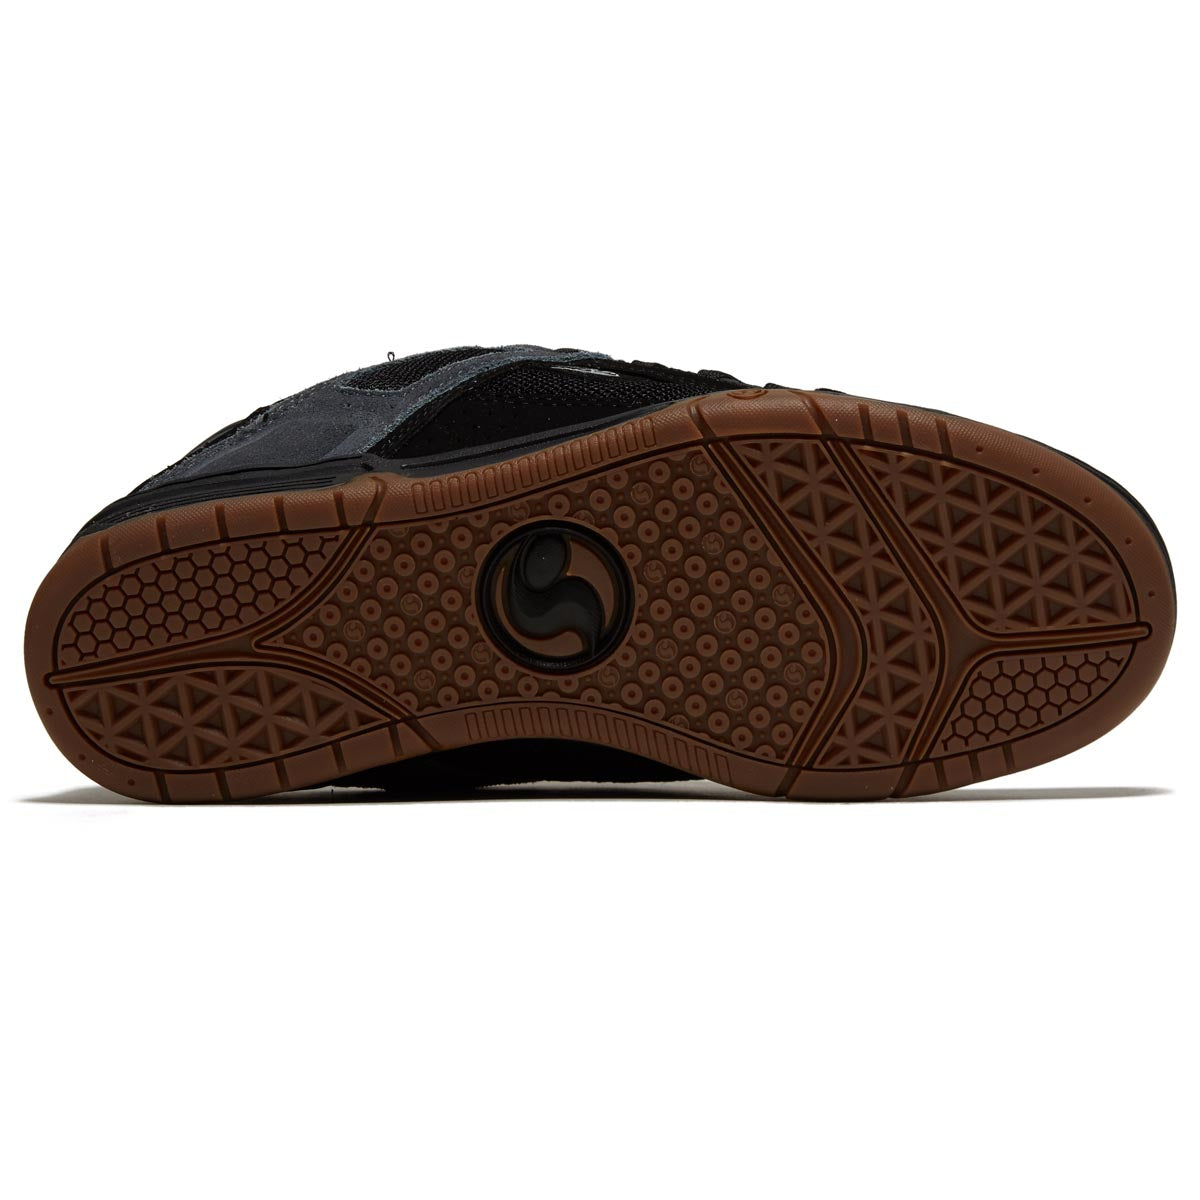 DVS Comanche Shoes - Black/Charcoal/Gray Suede image 4